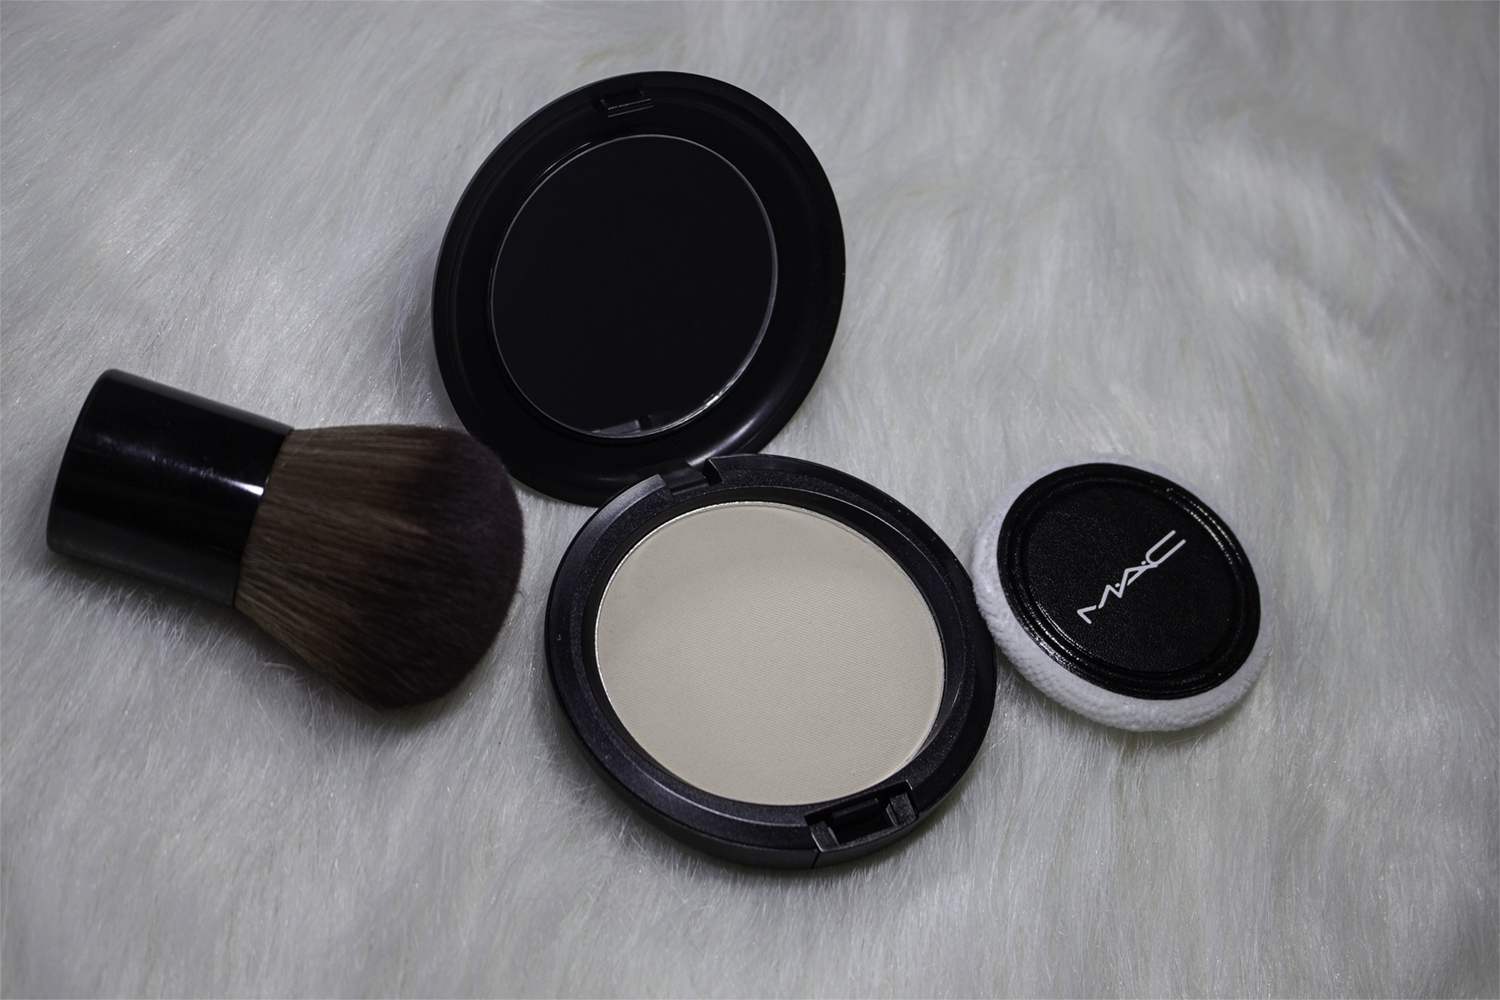 Không bóng, không bong và tự nhiên là những ưu điểm nổi bật của phấn phủ dạng bột MAC Cosmetics Blot Powder